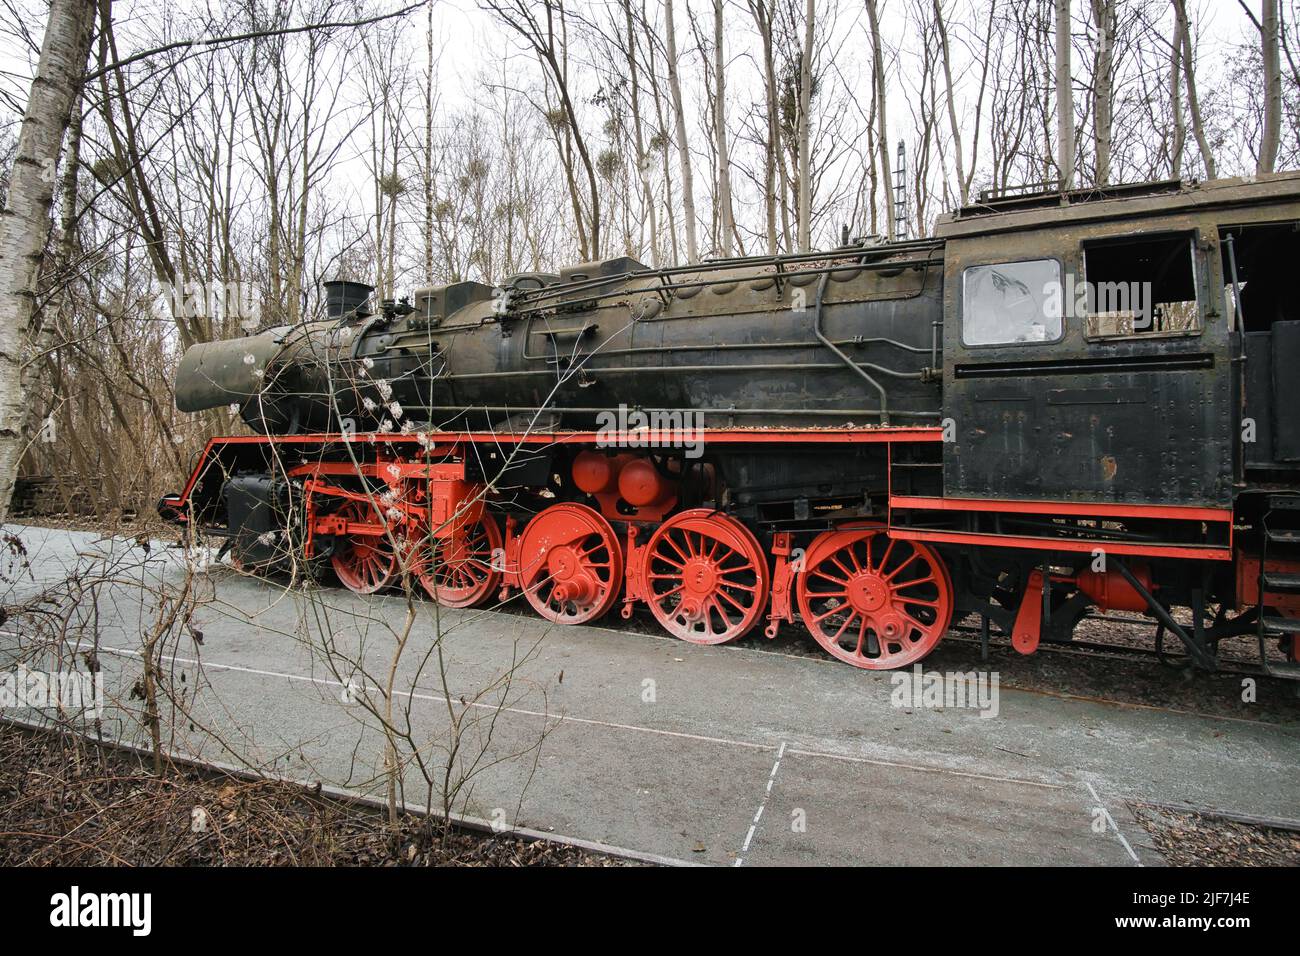 Locomotive à vapeur garée à un terminal. Chemin de fer historique de 1940 en rouge noir. Photo de nostalgie de la technologie passée Banque D'Images